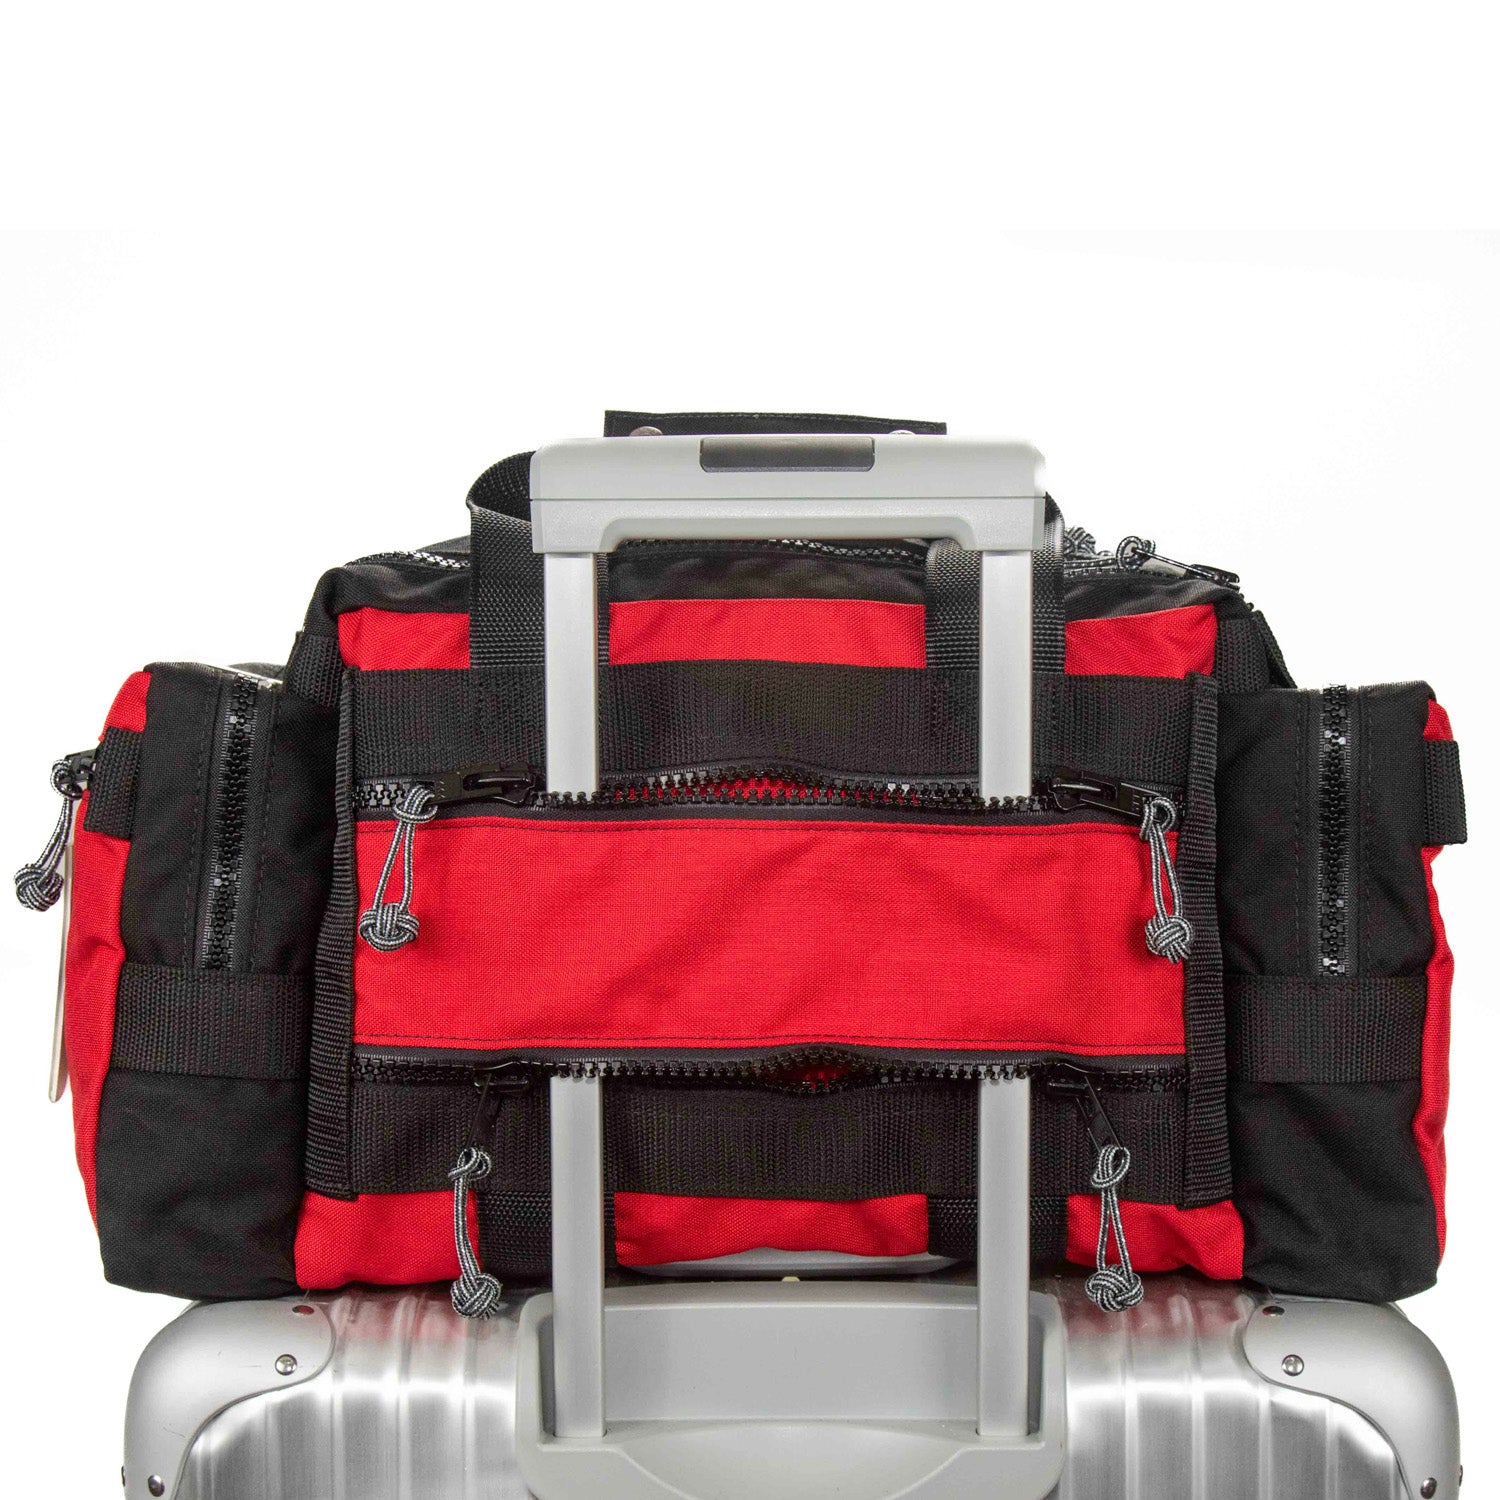 PR4 Safari Beano pass thru pocket makes mounting bag on rolling luggage secure. 